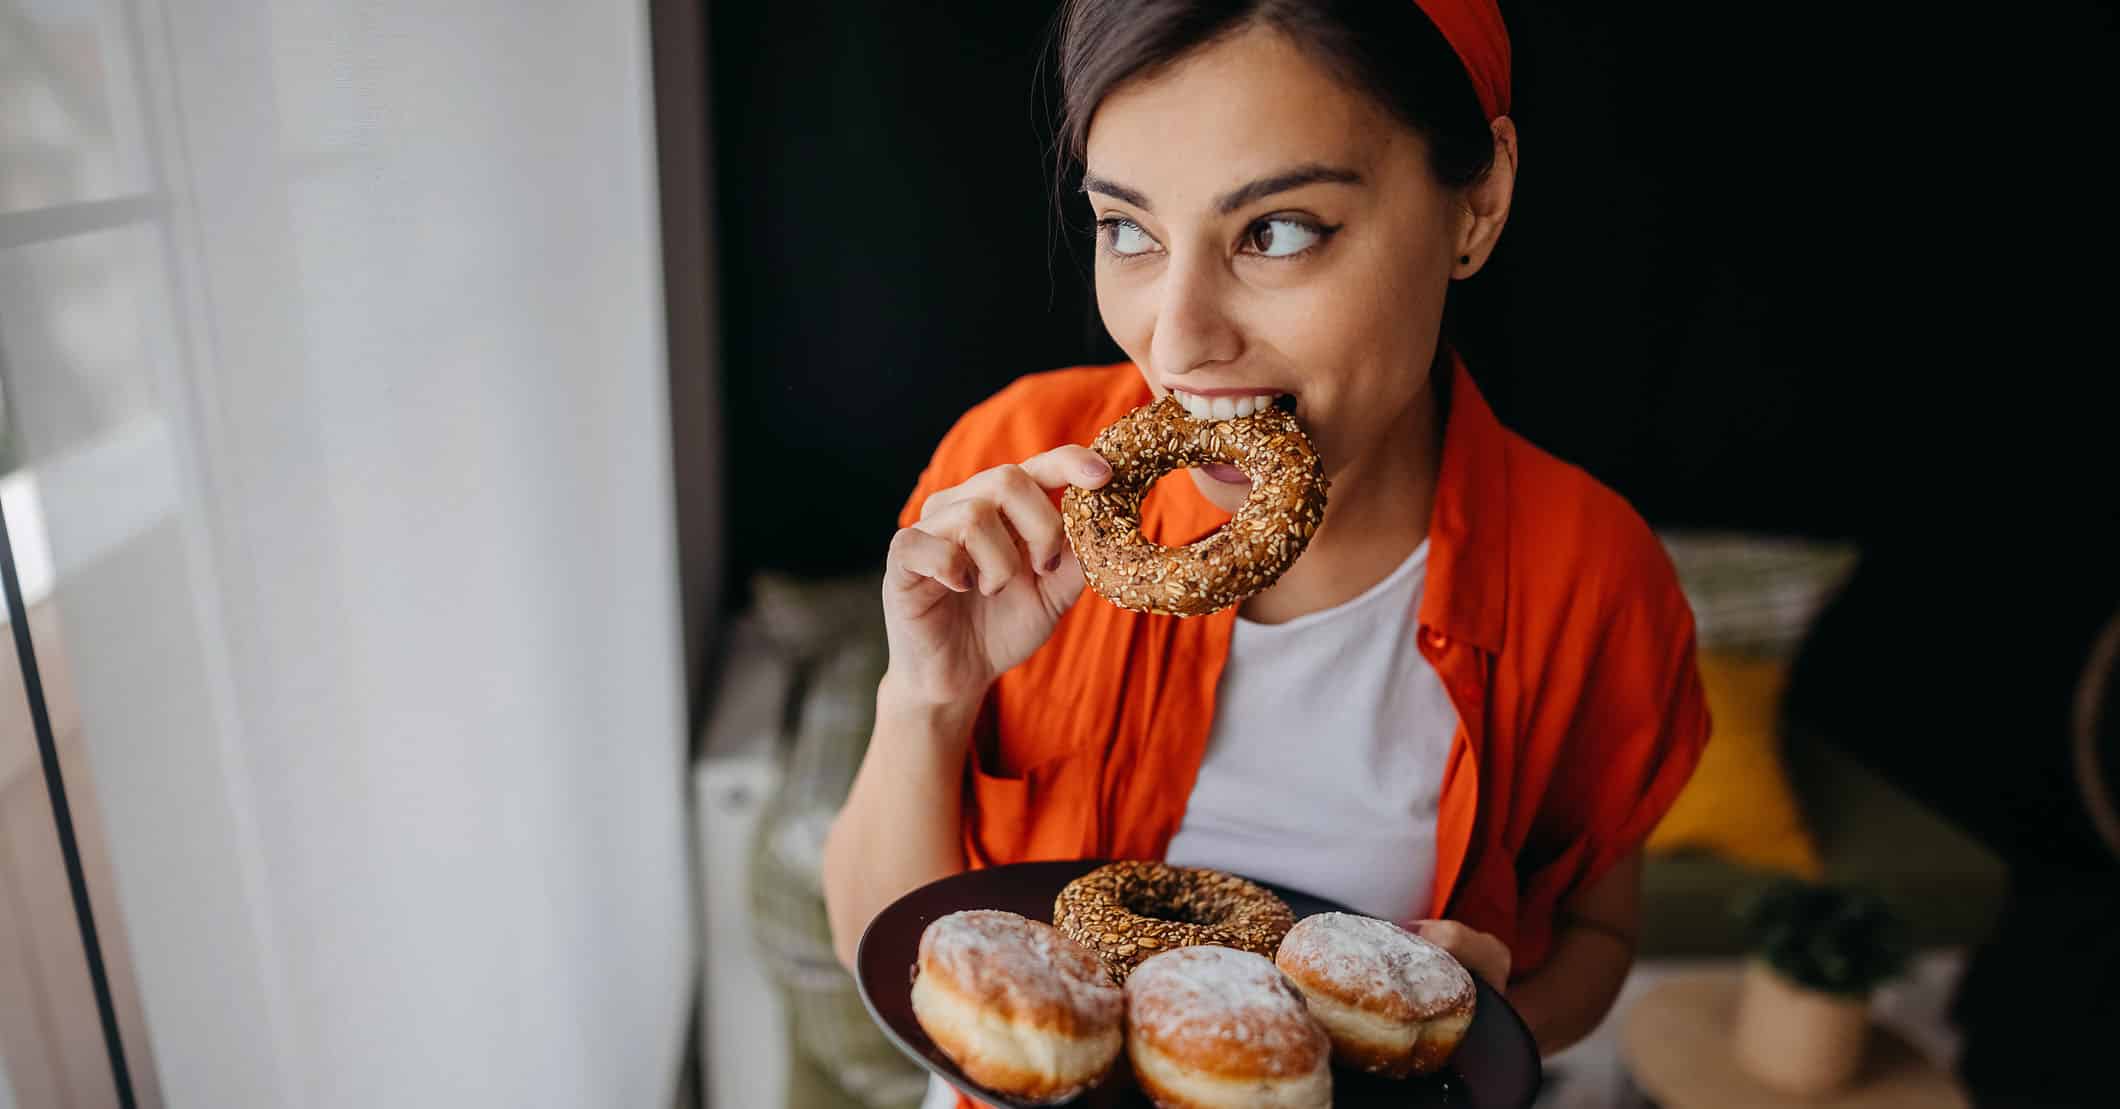 Kvinde med sukkertrang ved menstruation, der spiser donuts.